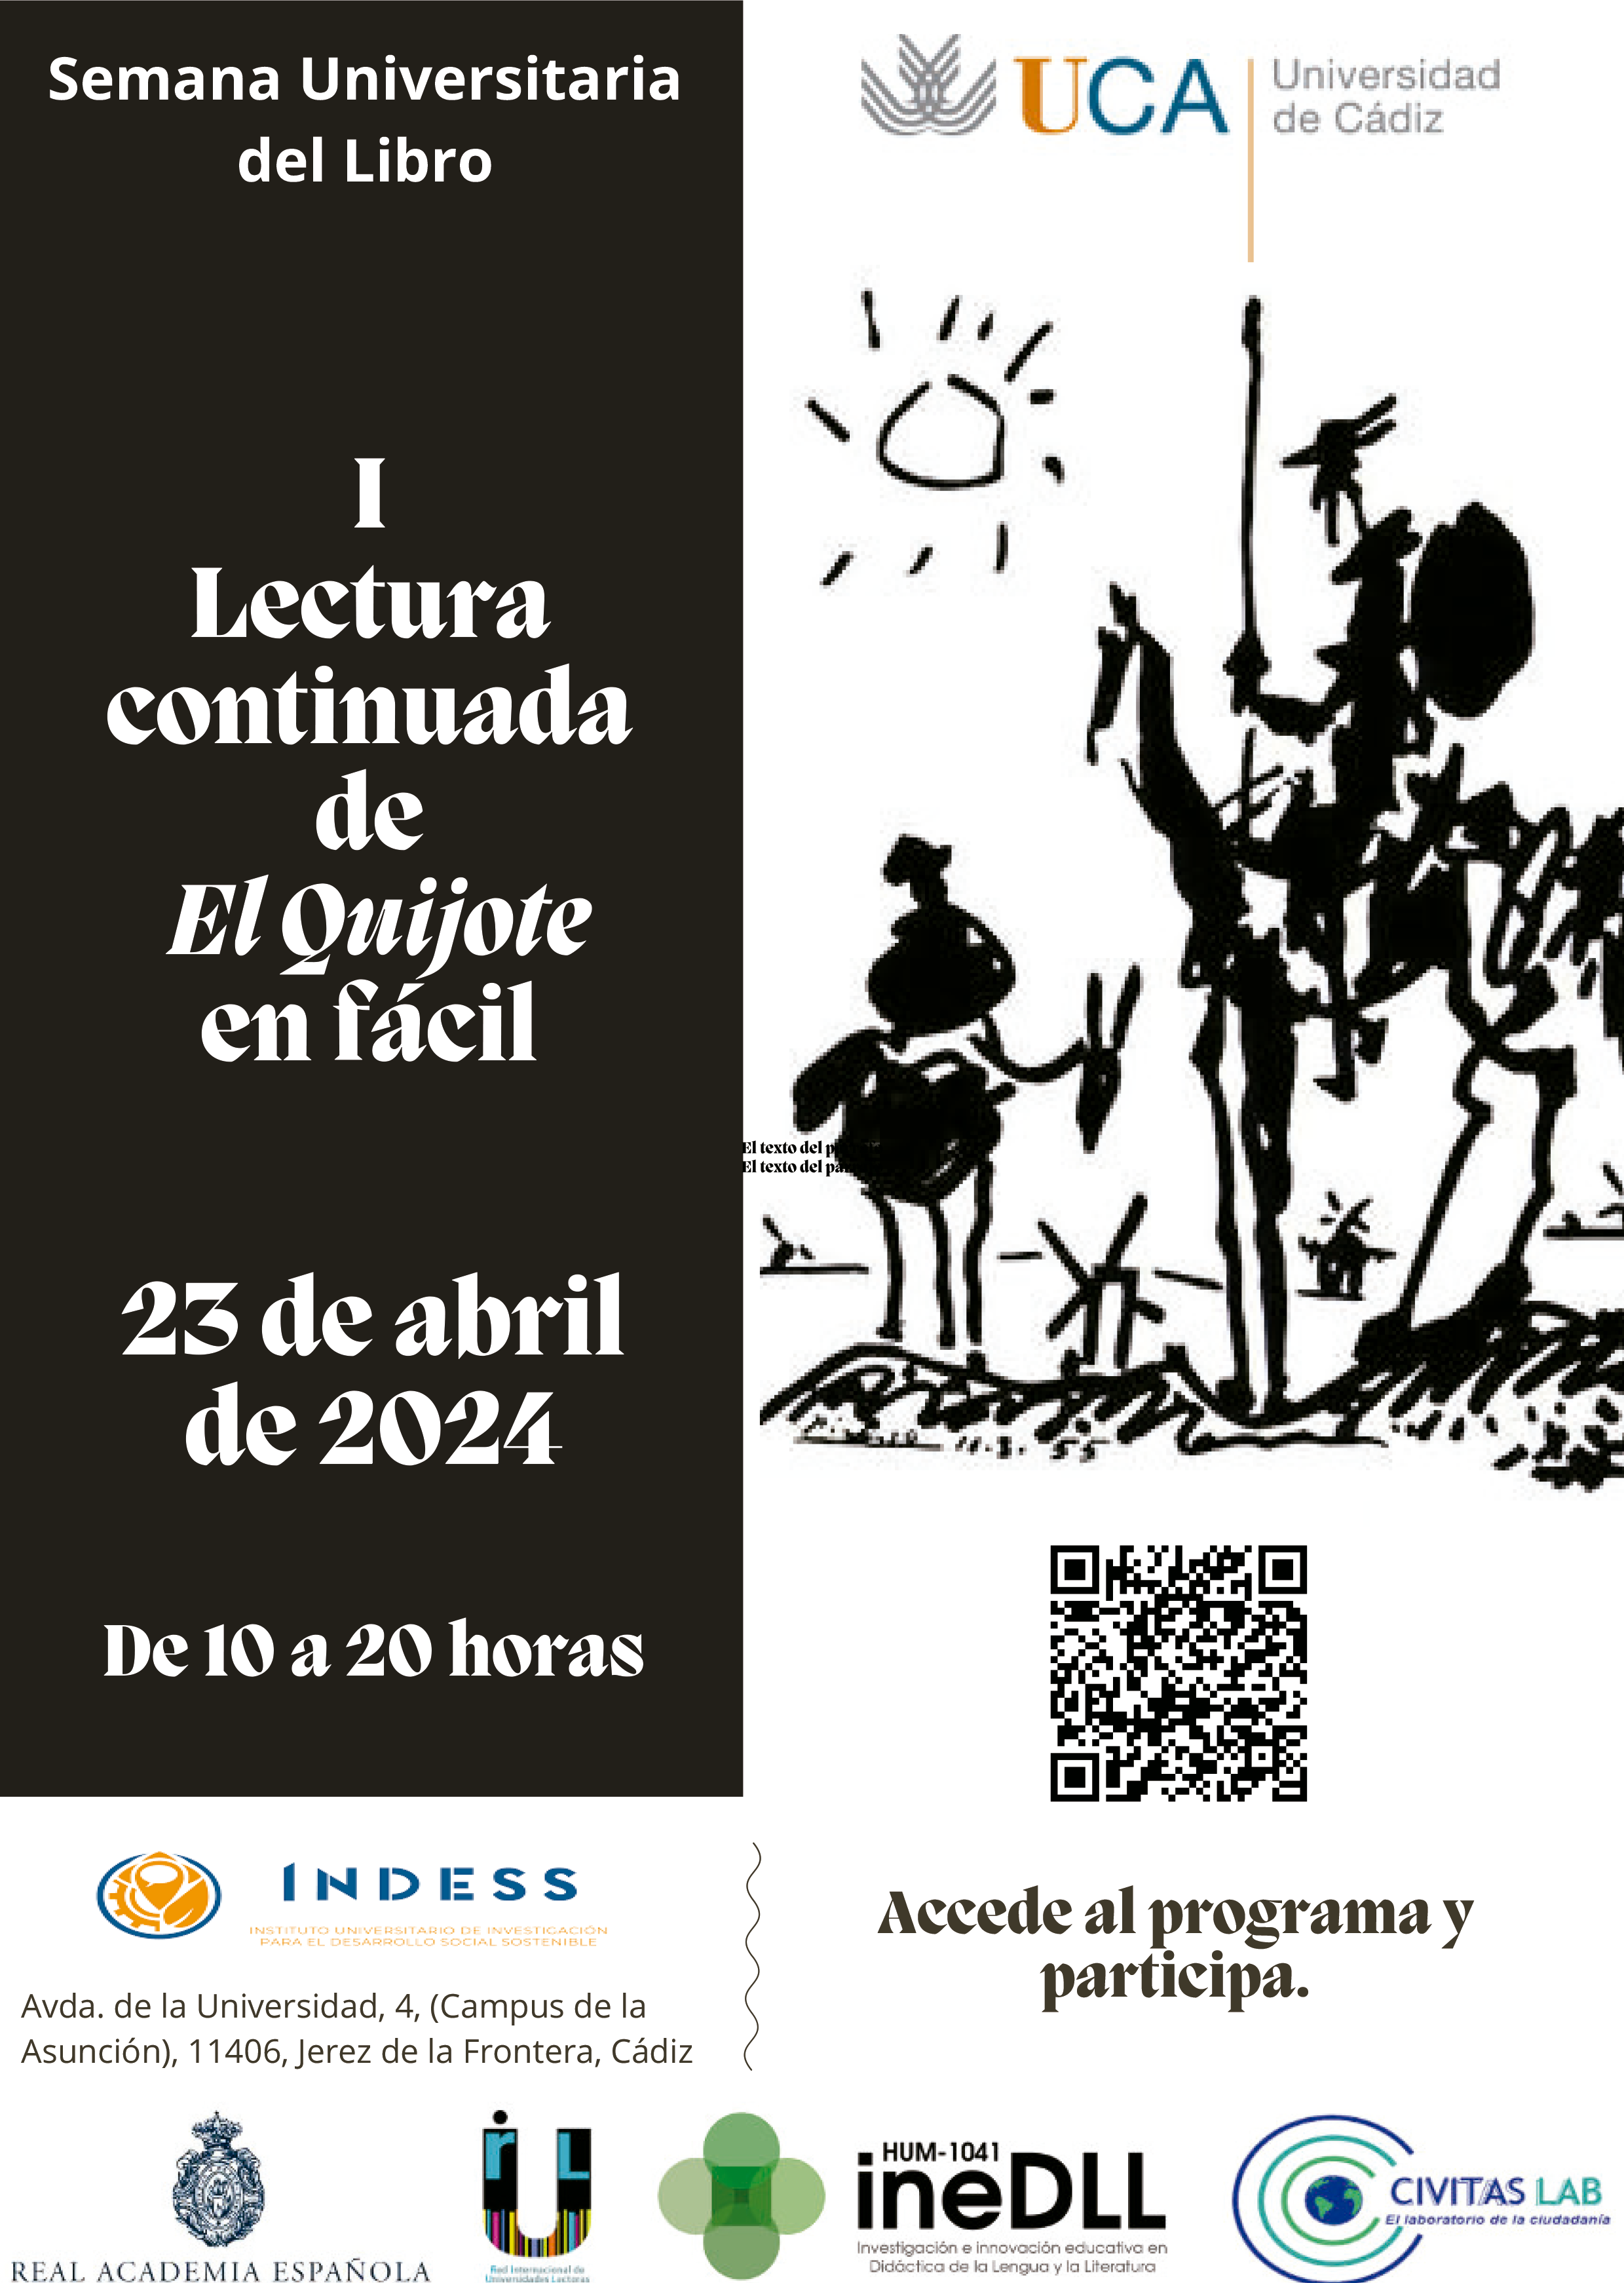 La Semana del Libro Universitario de la UCA celebra la I Lectura continuada de Don Quijote de la Mancha en Fácil